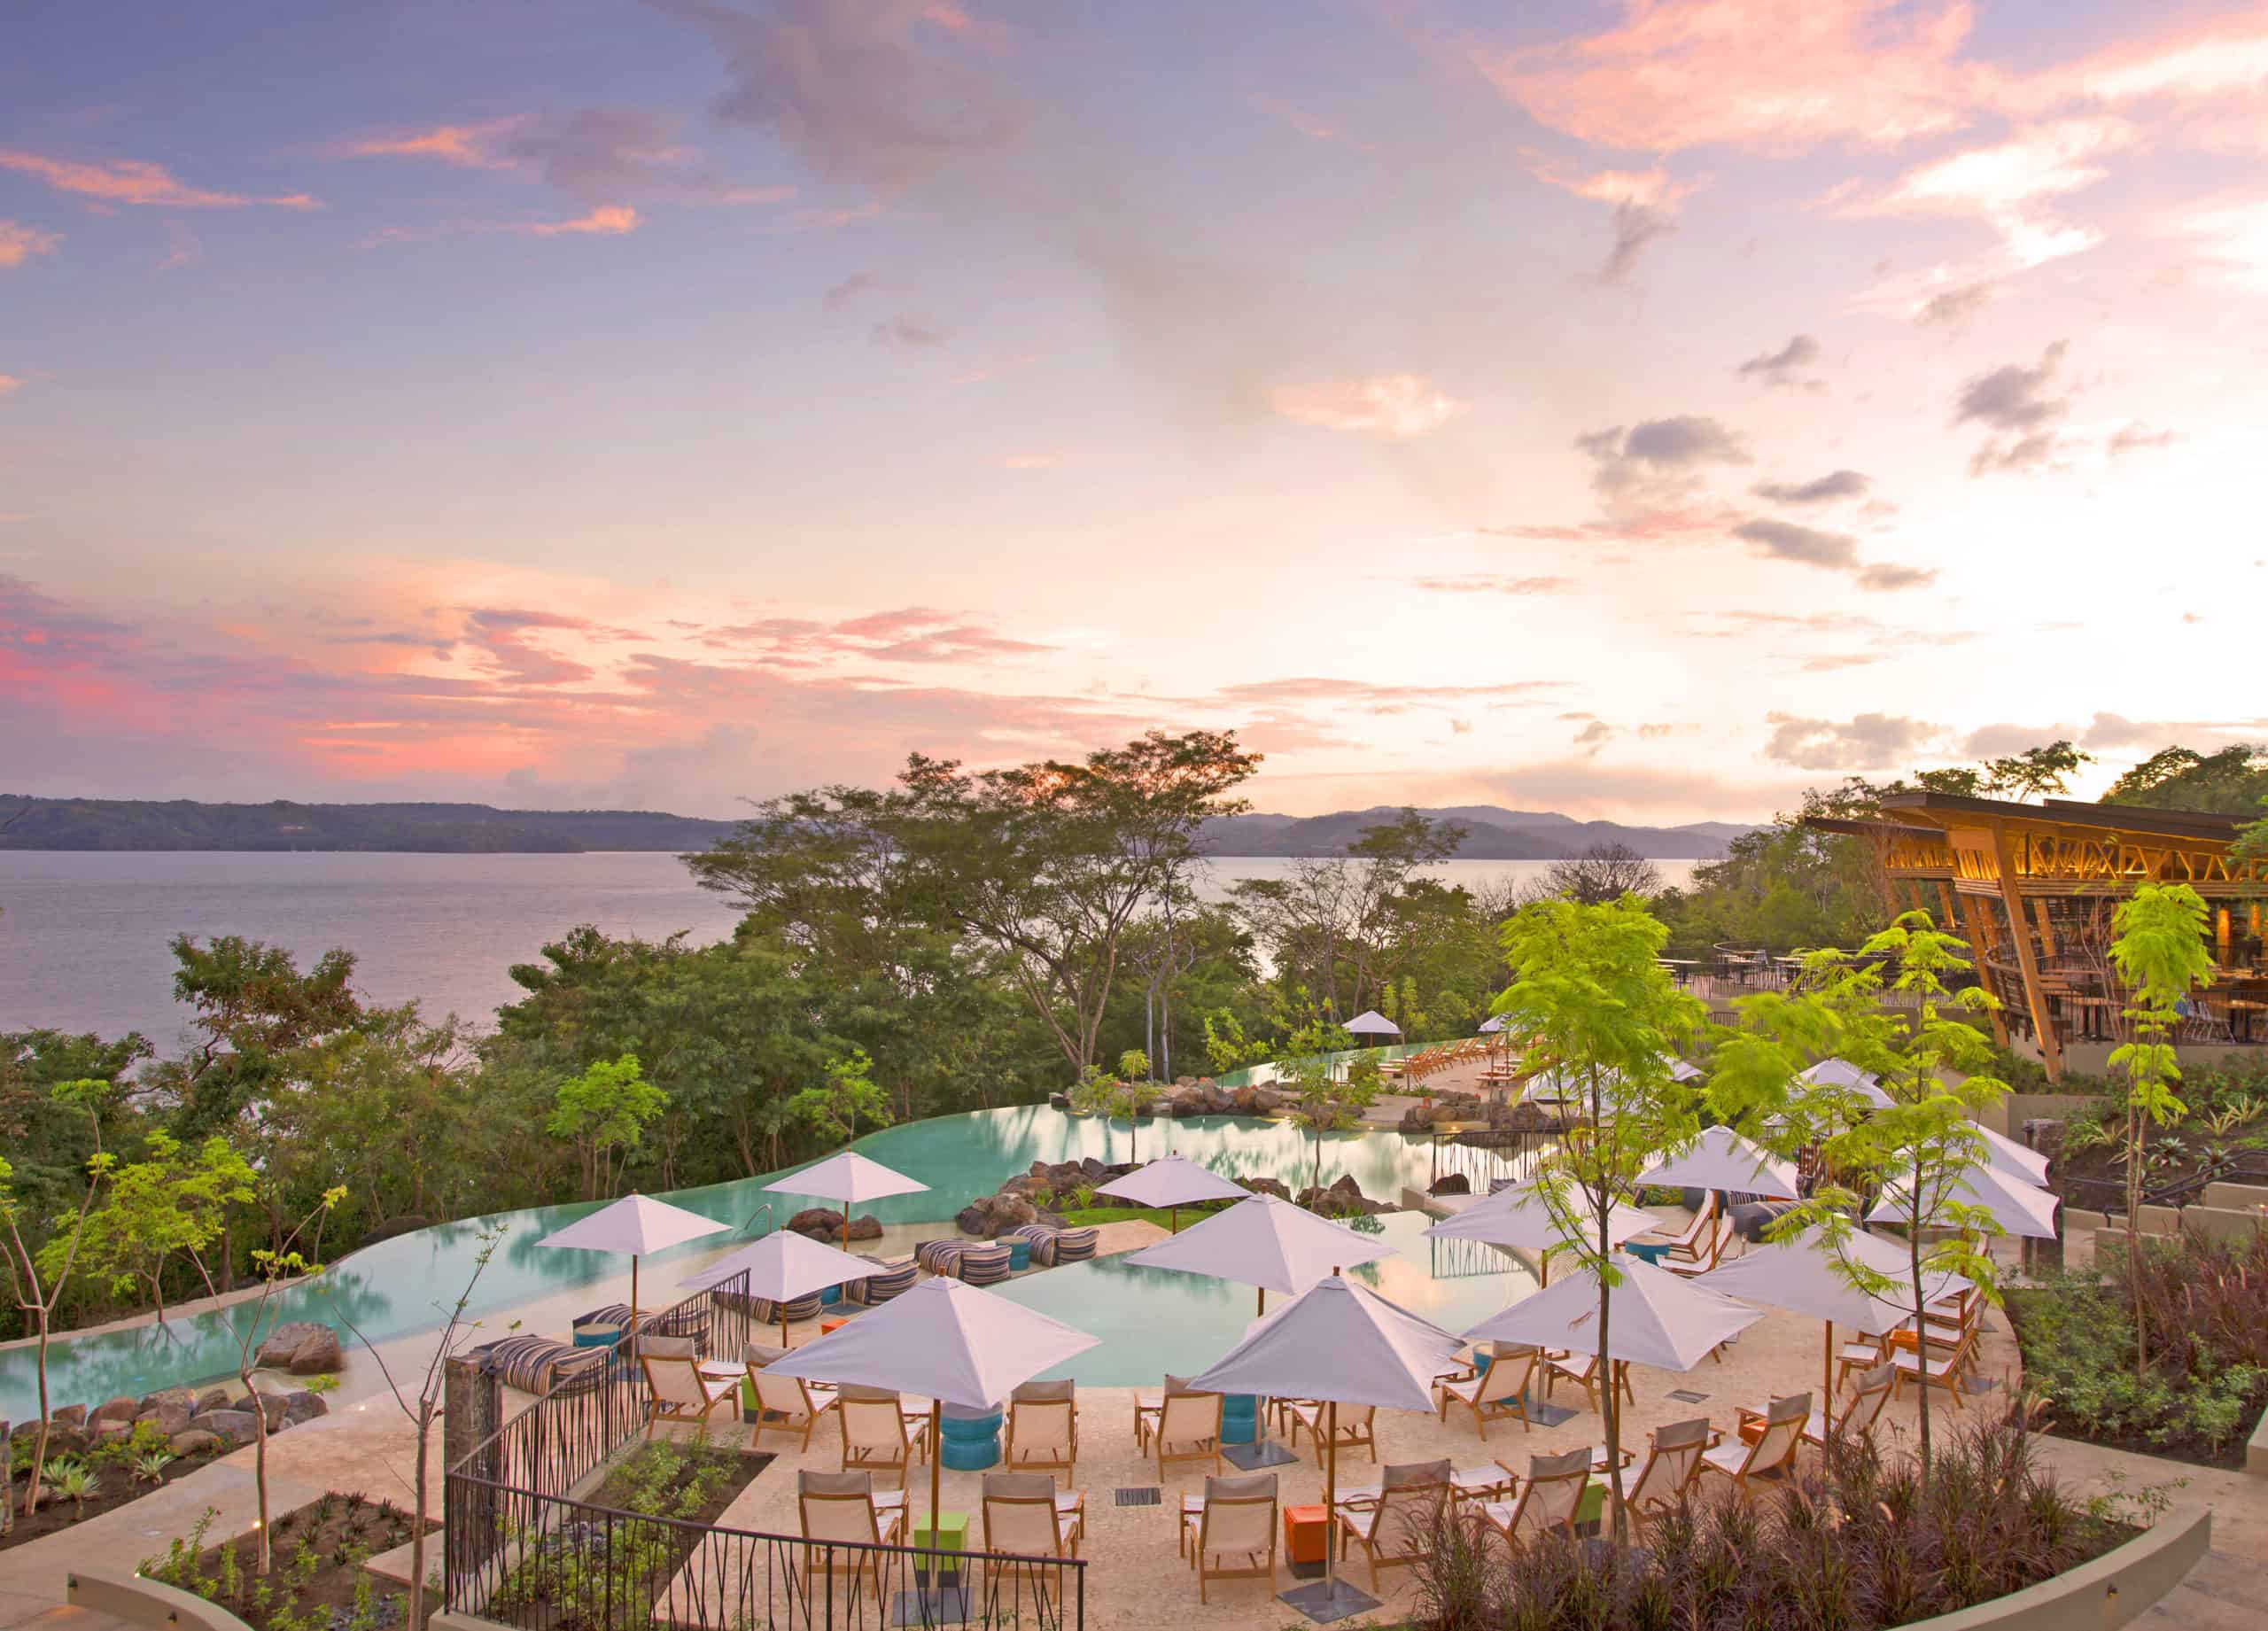 Andaz Costa Rica Resort At Peninsula Papagayo